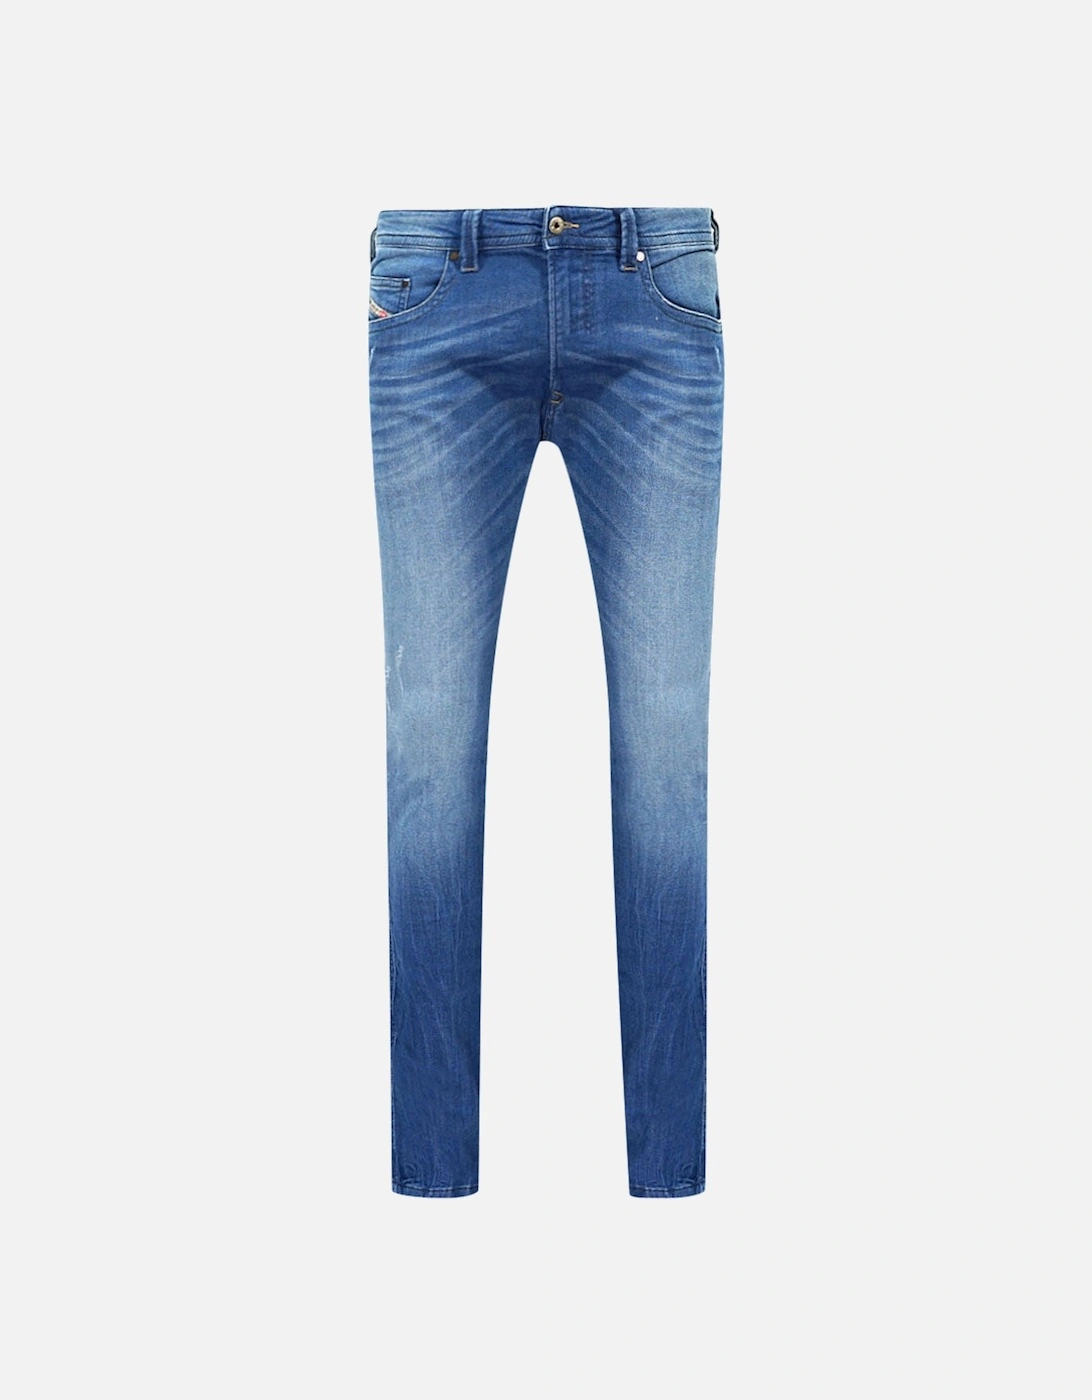 Thavar-NE 0837T Jeans, 6 of 5